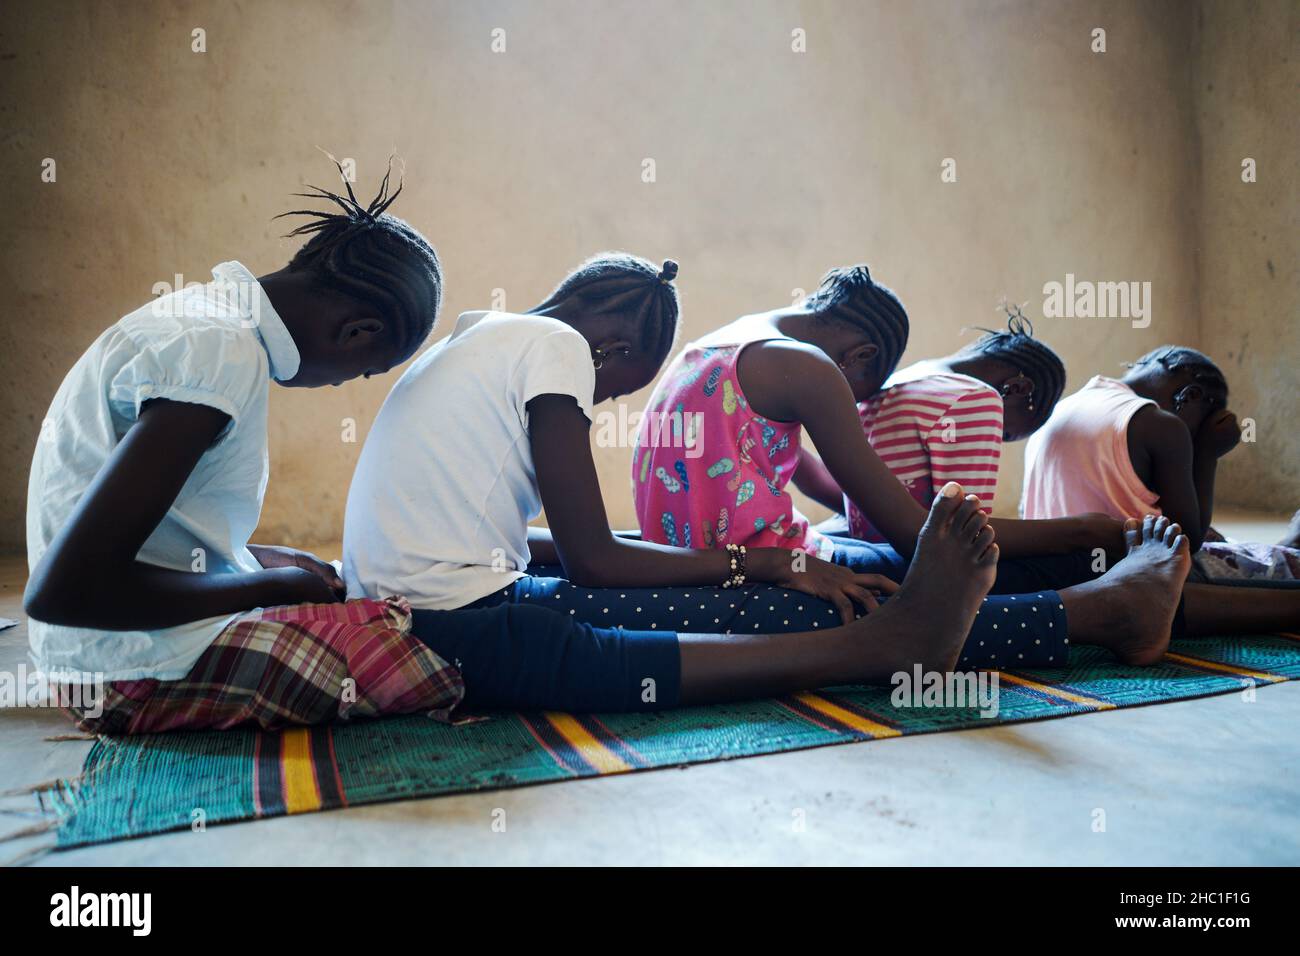 Vista laterale di un gruppo di spaventate ragazze nere africane del villaggio che siedono sul pavimento in attesa del loro turno durante un rituale collettivo di circoncisione Foto Stock